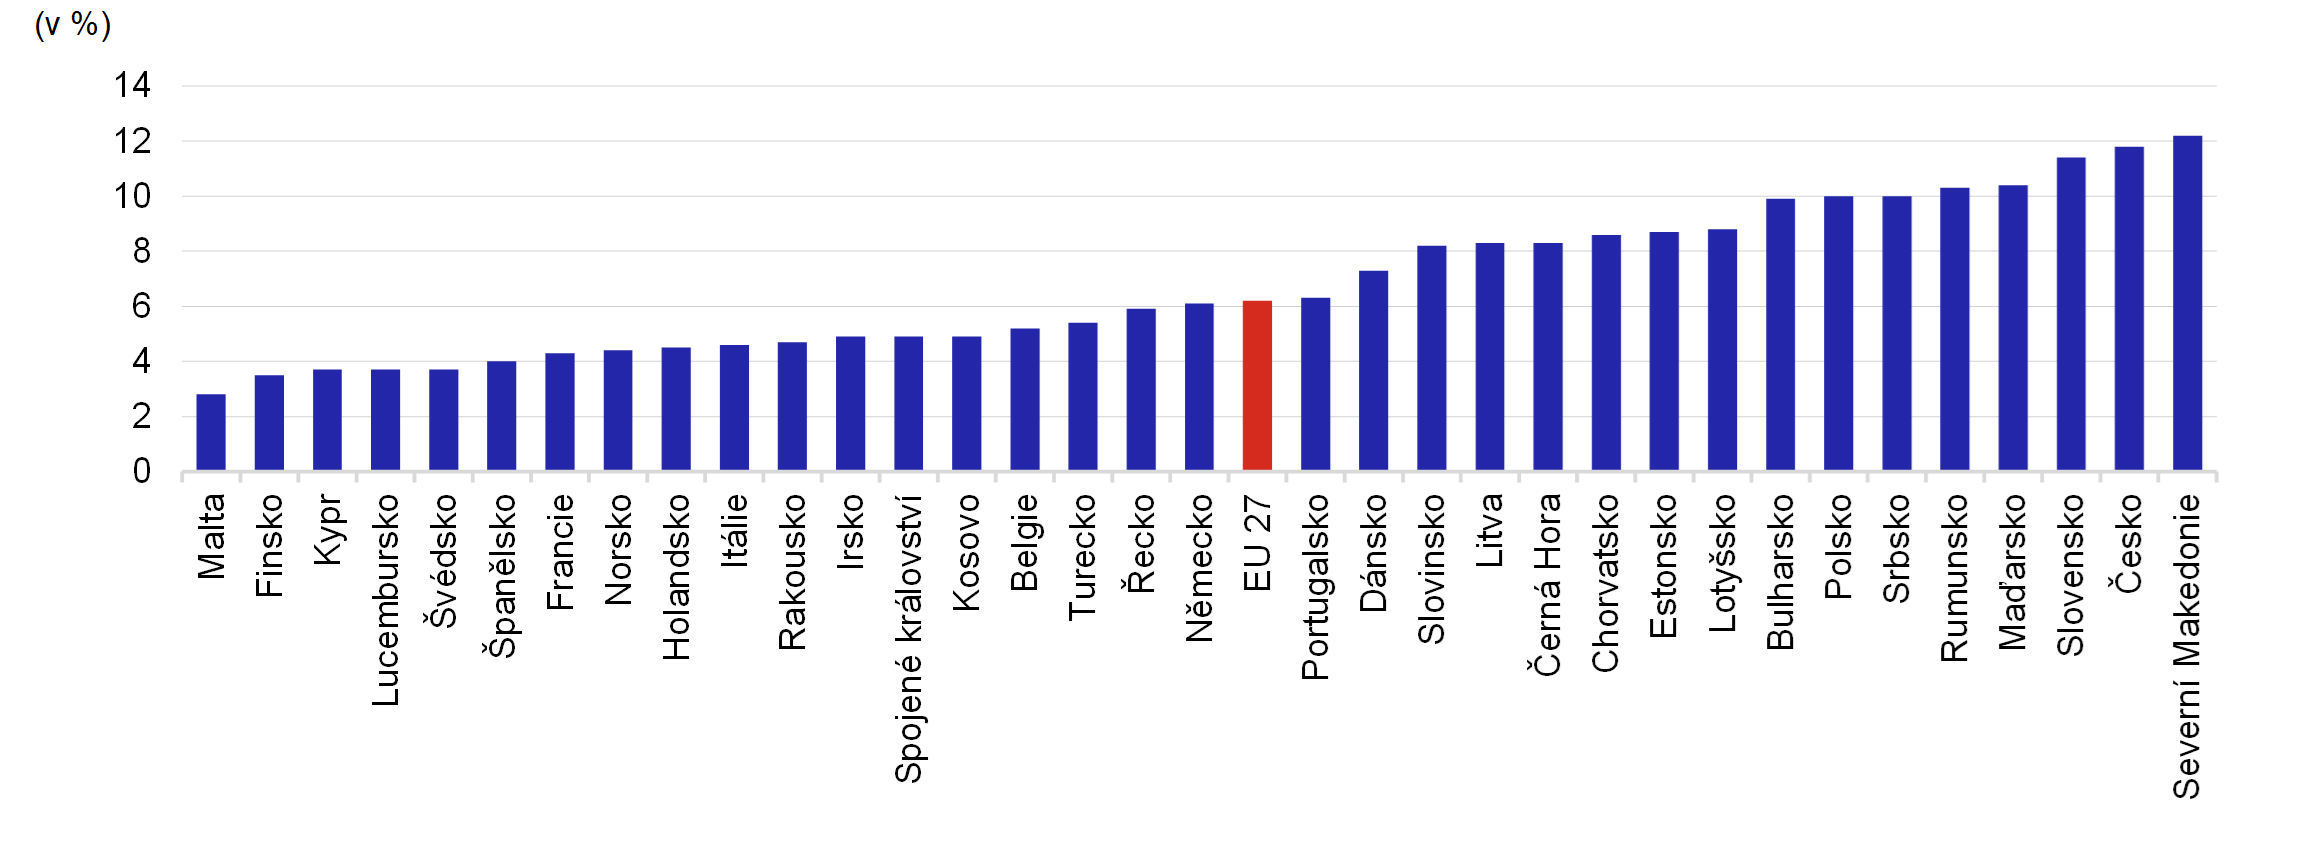 Graf 1 – Podíl nákladů na energie na celkové spotřebě evropských domácností